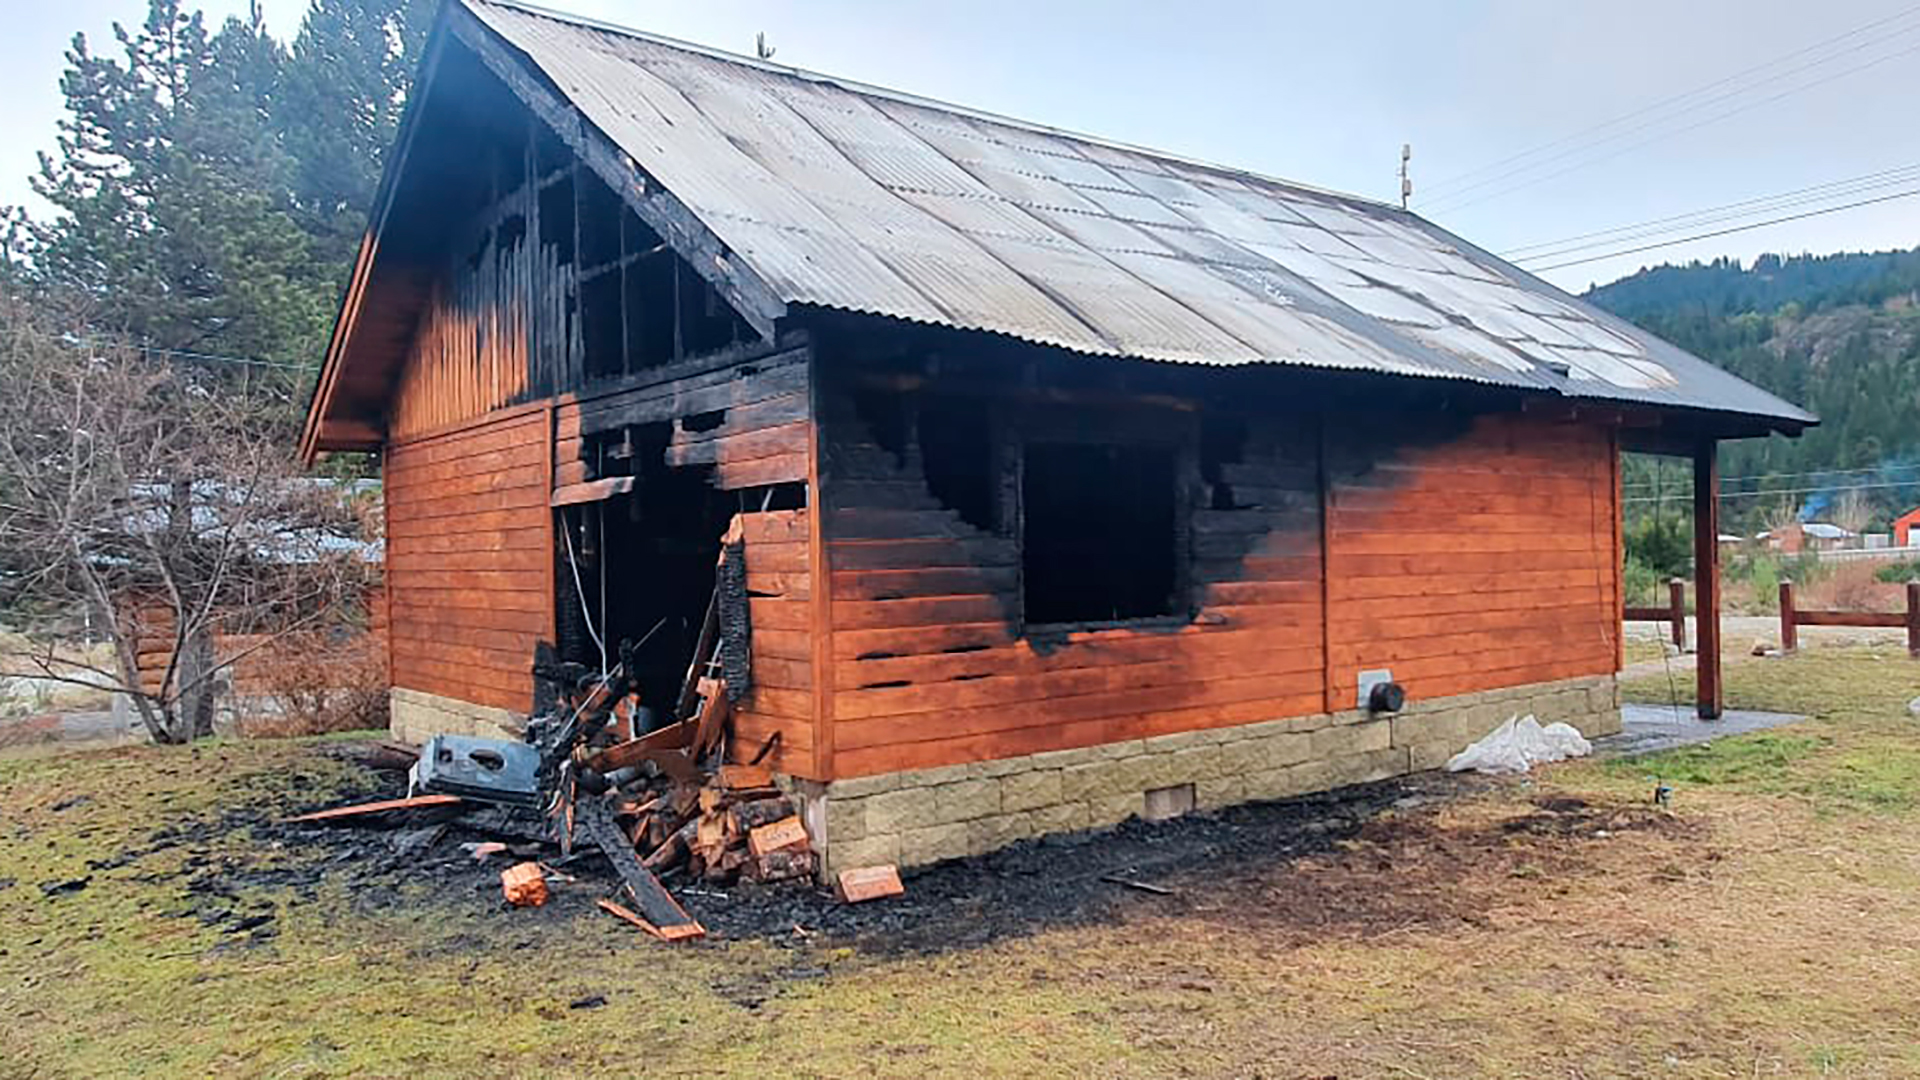 Esta madrugada una comunidad chubutense se despertó con las llamas de un incendio que devoraron una oficina de Bosques, todo apunta a los grupos mapuches revolucionarios